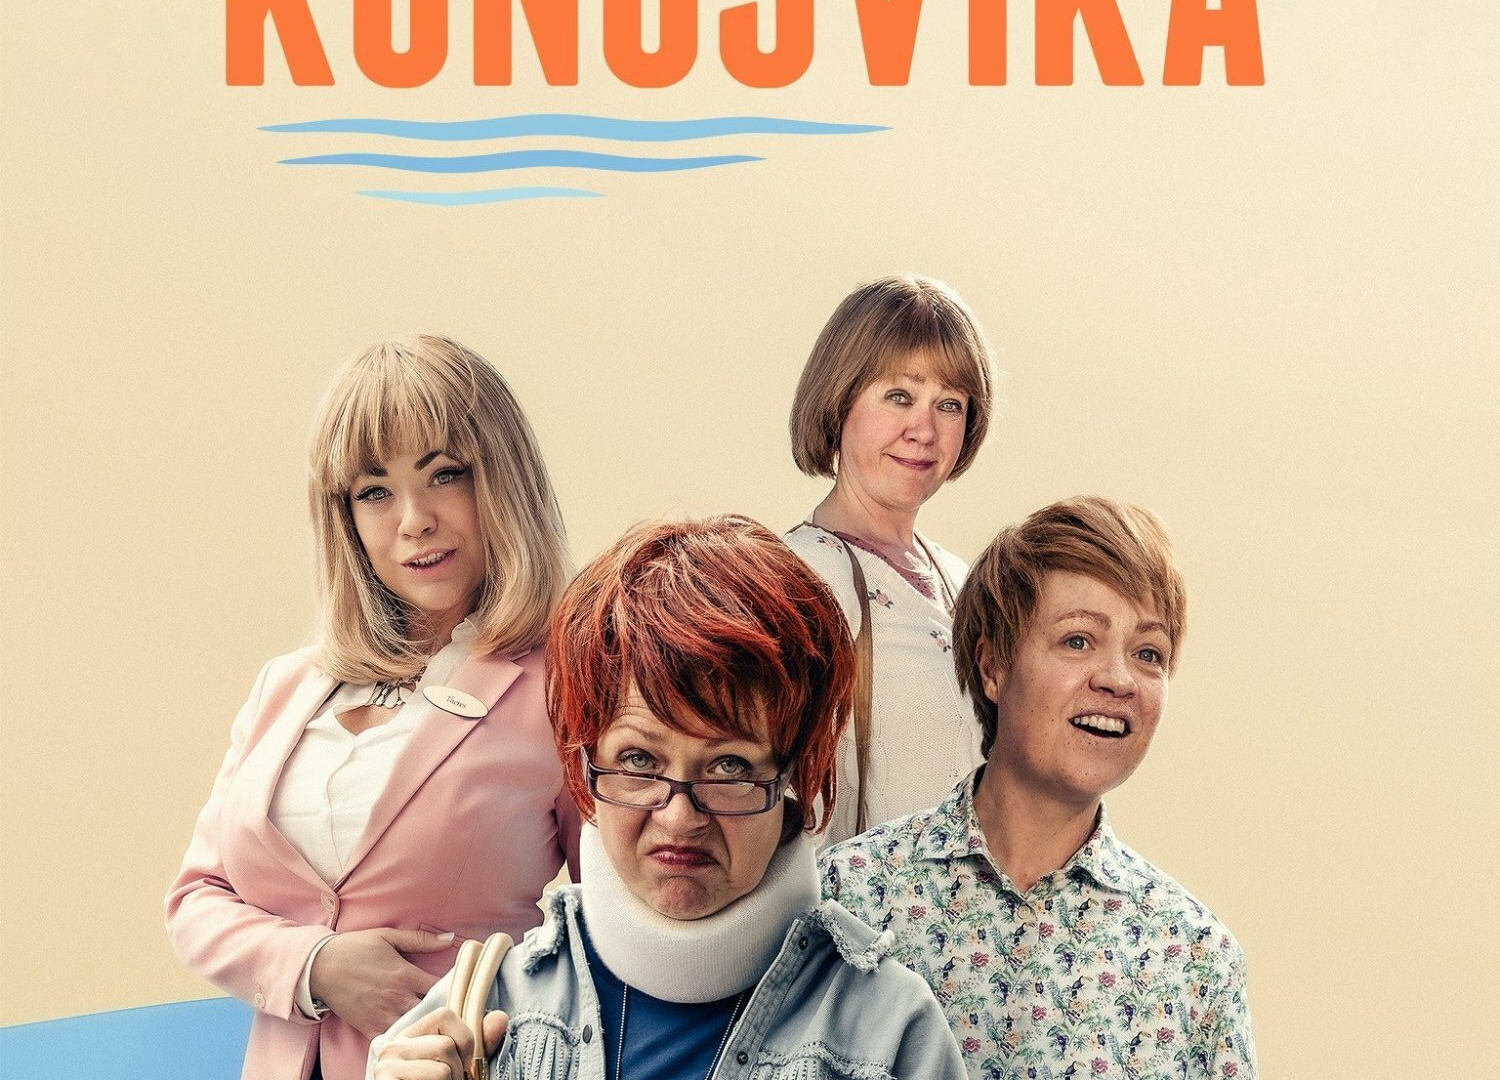 Show Kongsvika